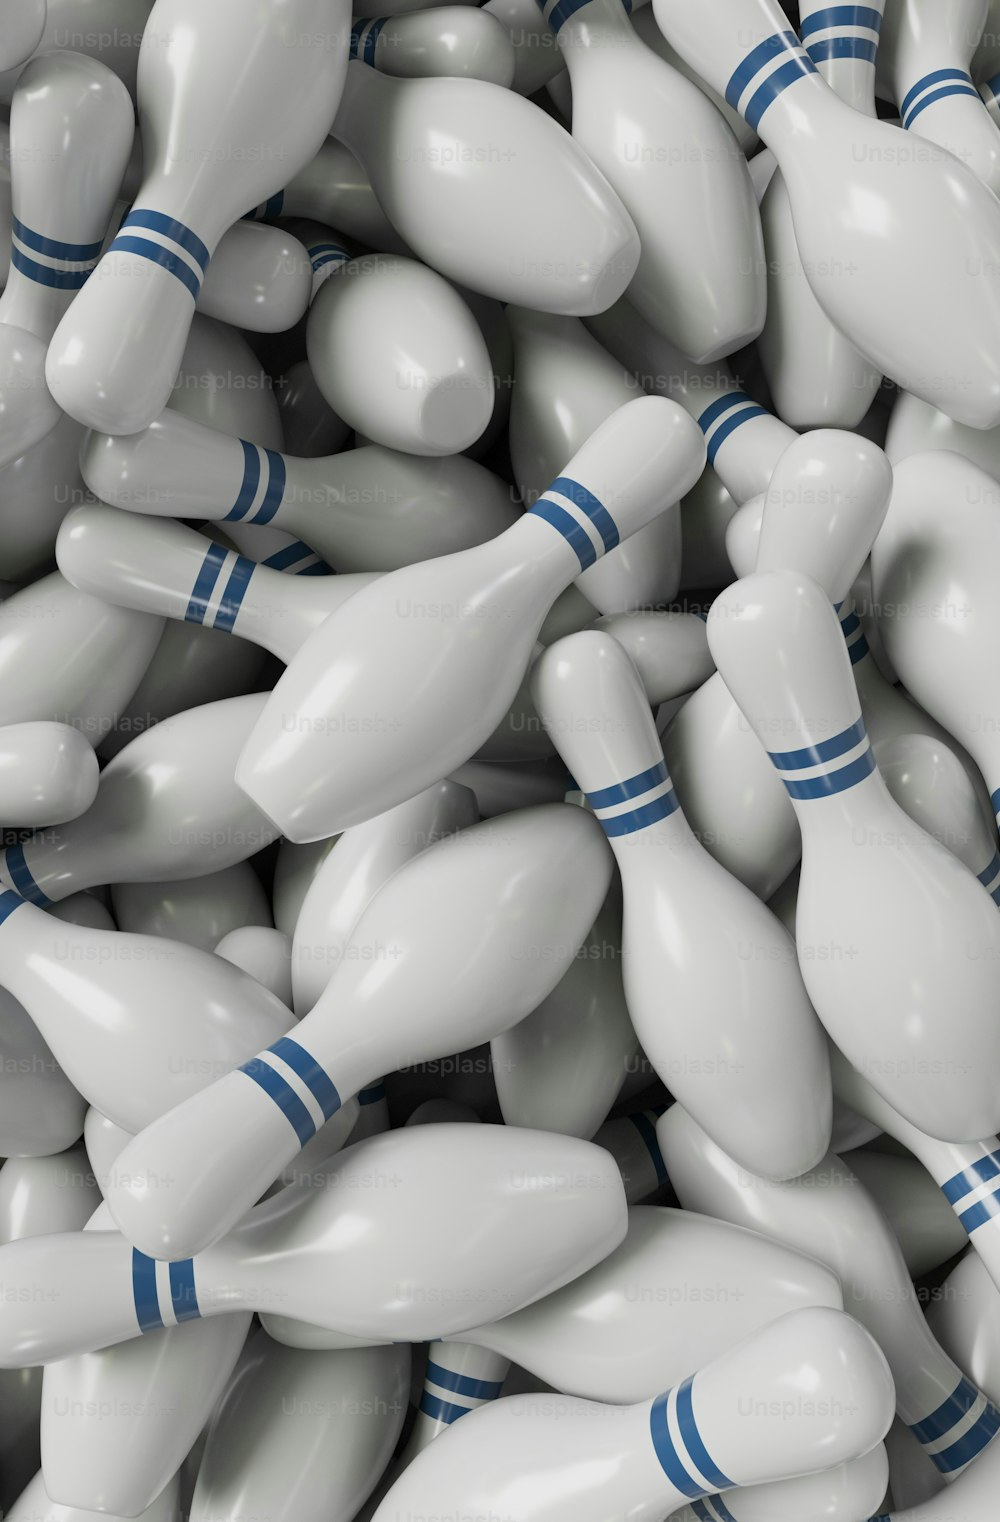 una pila di birilli da bowling bianchi con spille blu su di essi